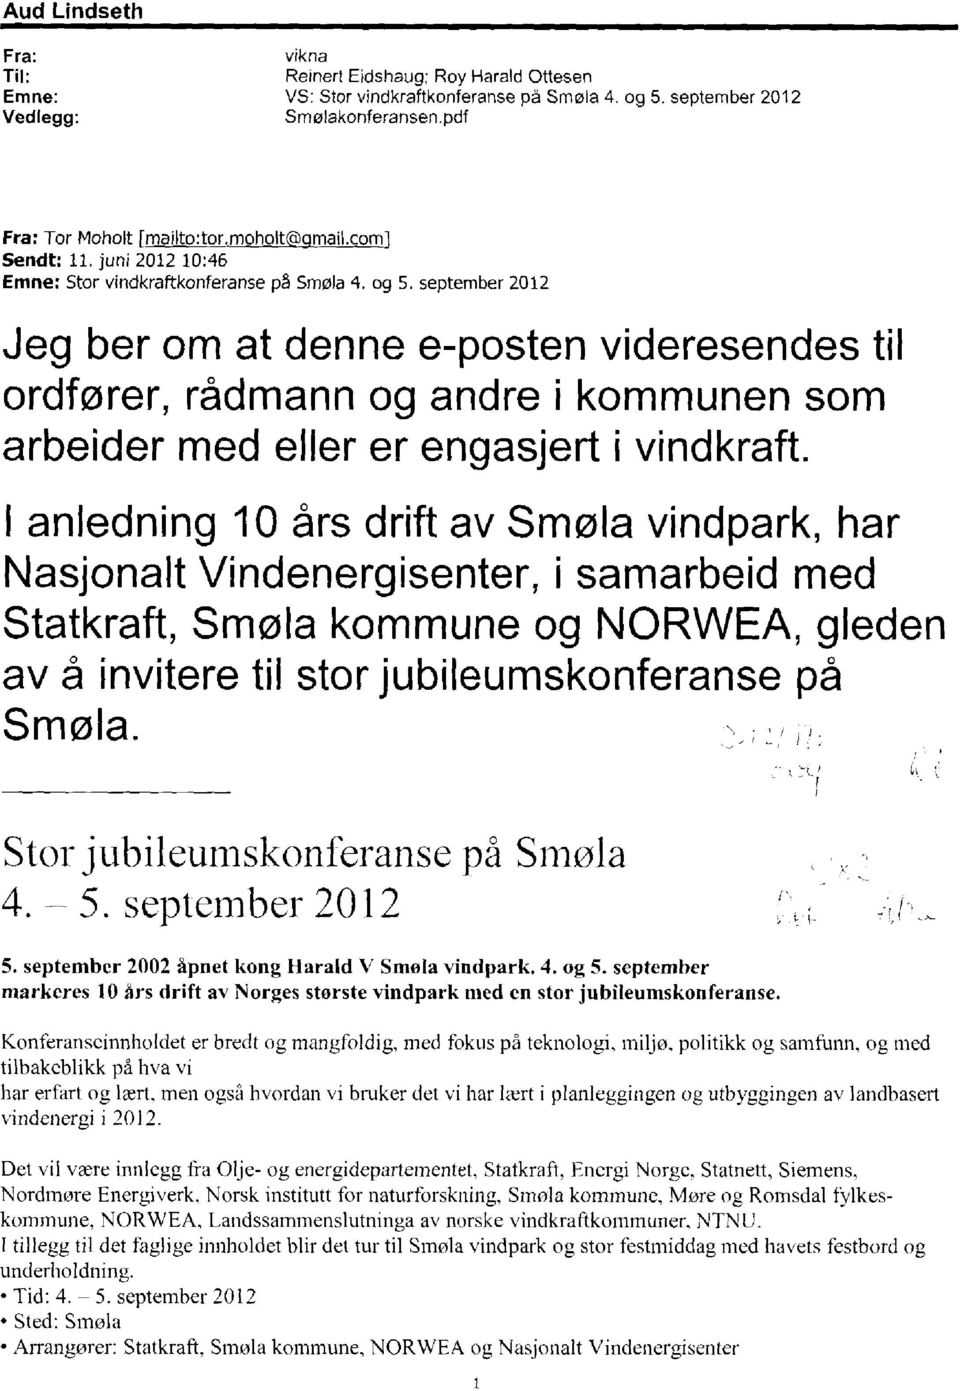 september 2012 Jeg ber om at denne e-posten videresendestil ordfører, rådmann og andre i kommunensom arbeider med eller er engasjert i vindkraft.